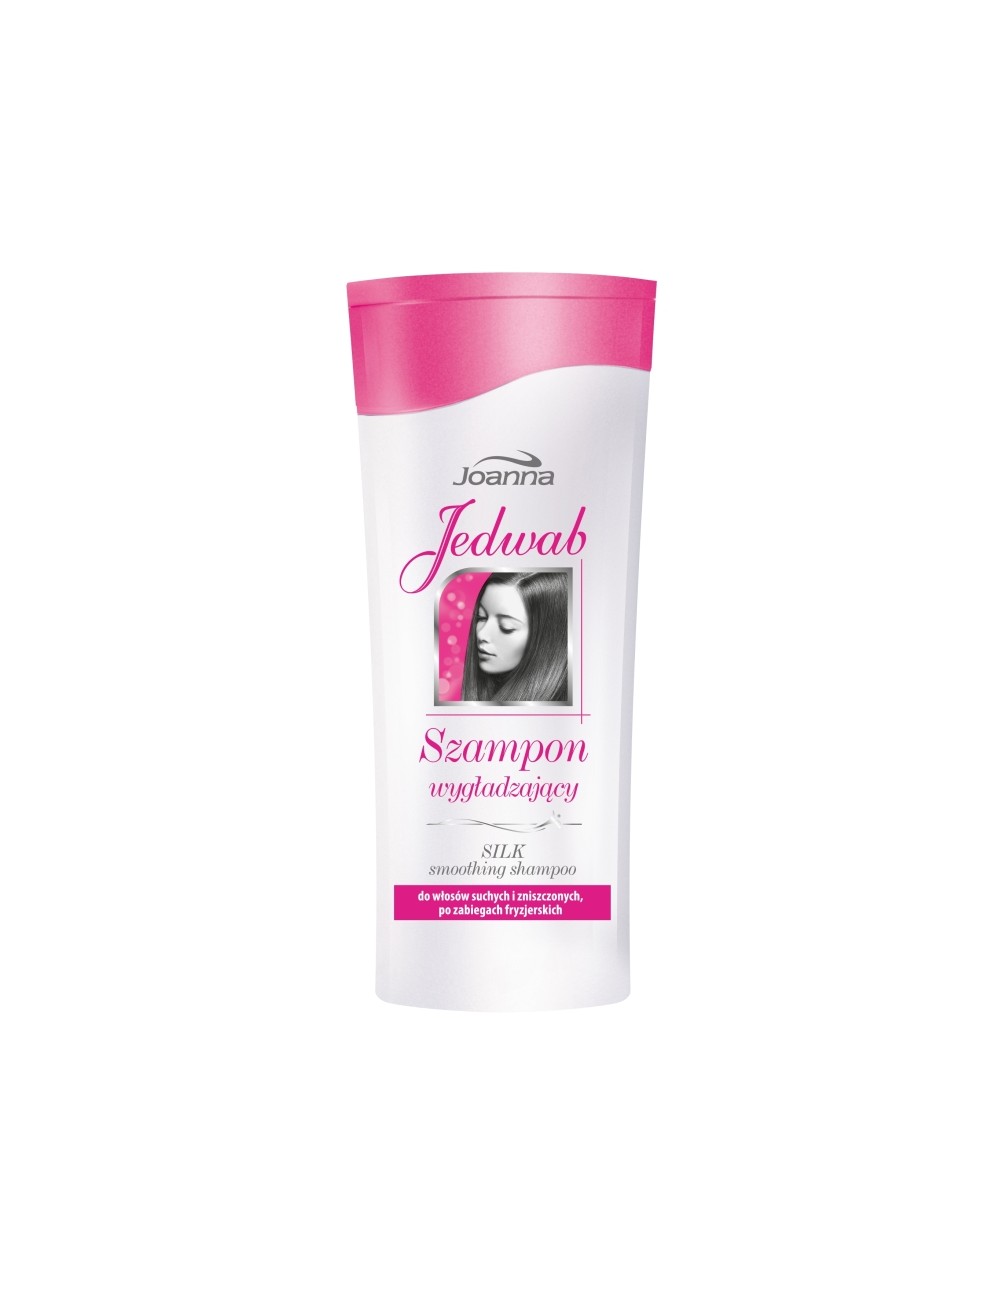 Joanna jedwab – szampon wygładzający do włosów suchych, zniszczonych, po zabiegach fryzjerskich 200ml